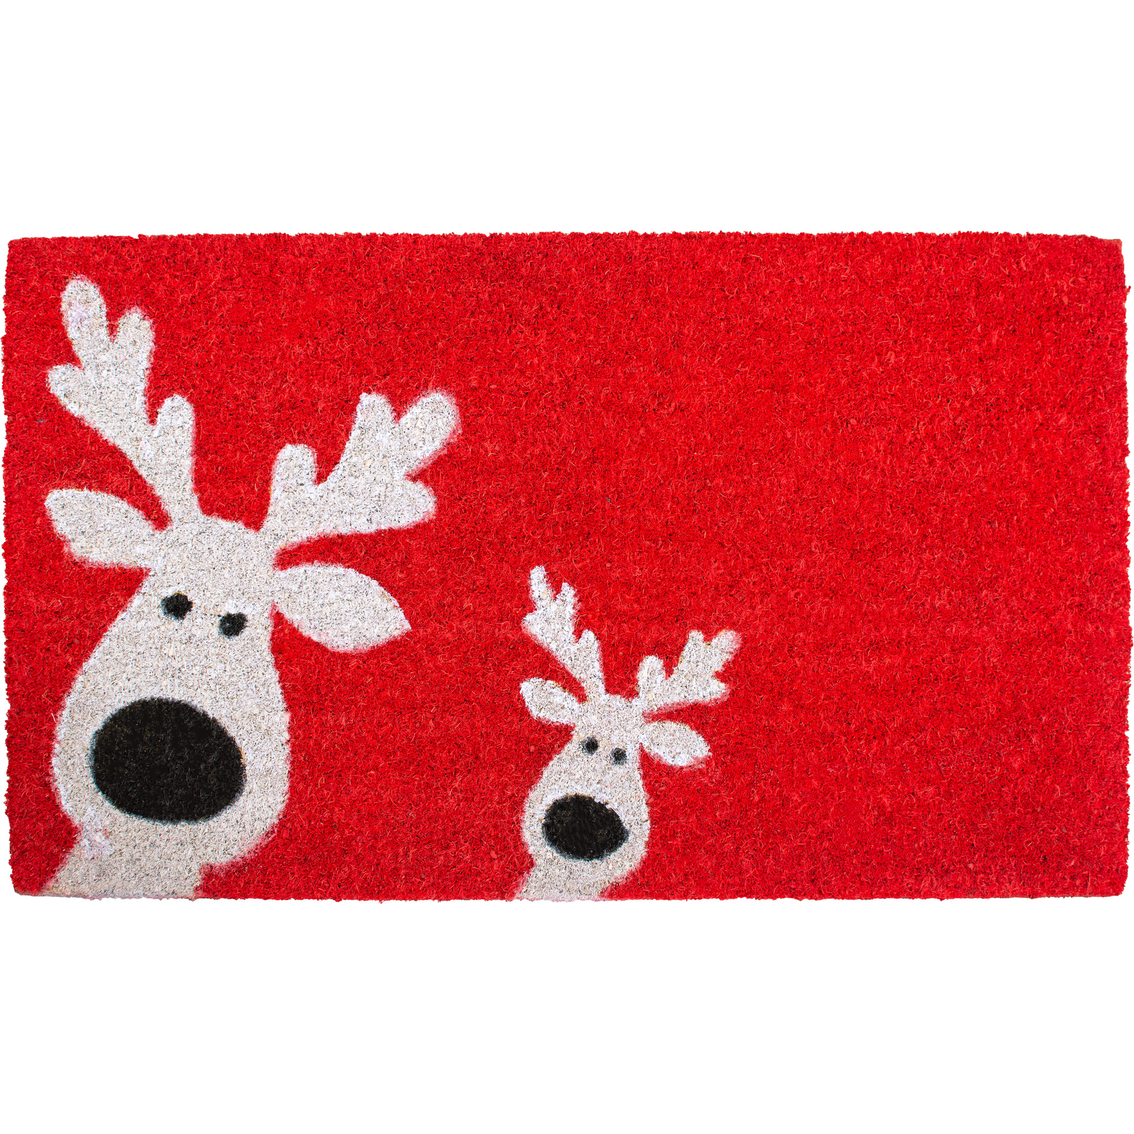 Callowaymills Peeking Reindeer 17 x 29 in. Doormat